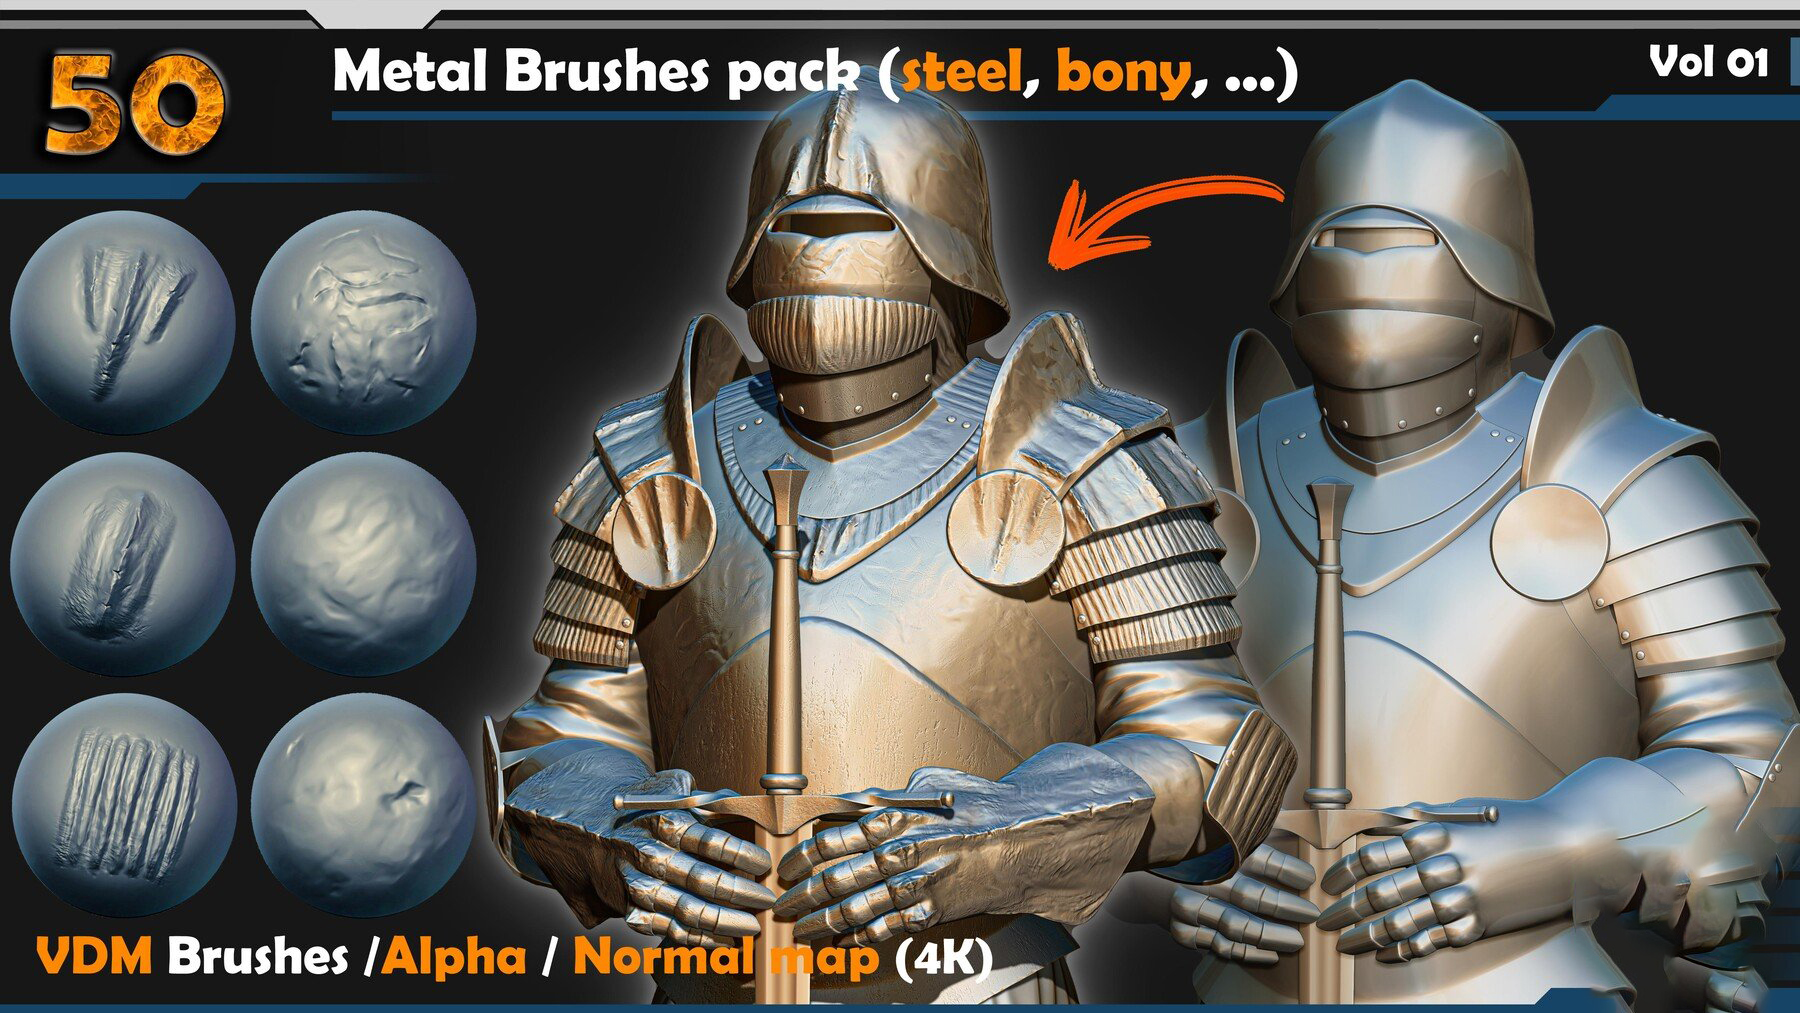 Metal Brushes (steel, bony, ...) Vol 01